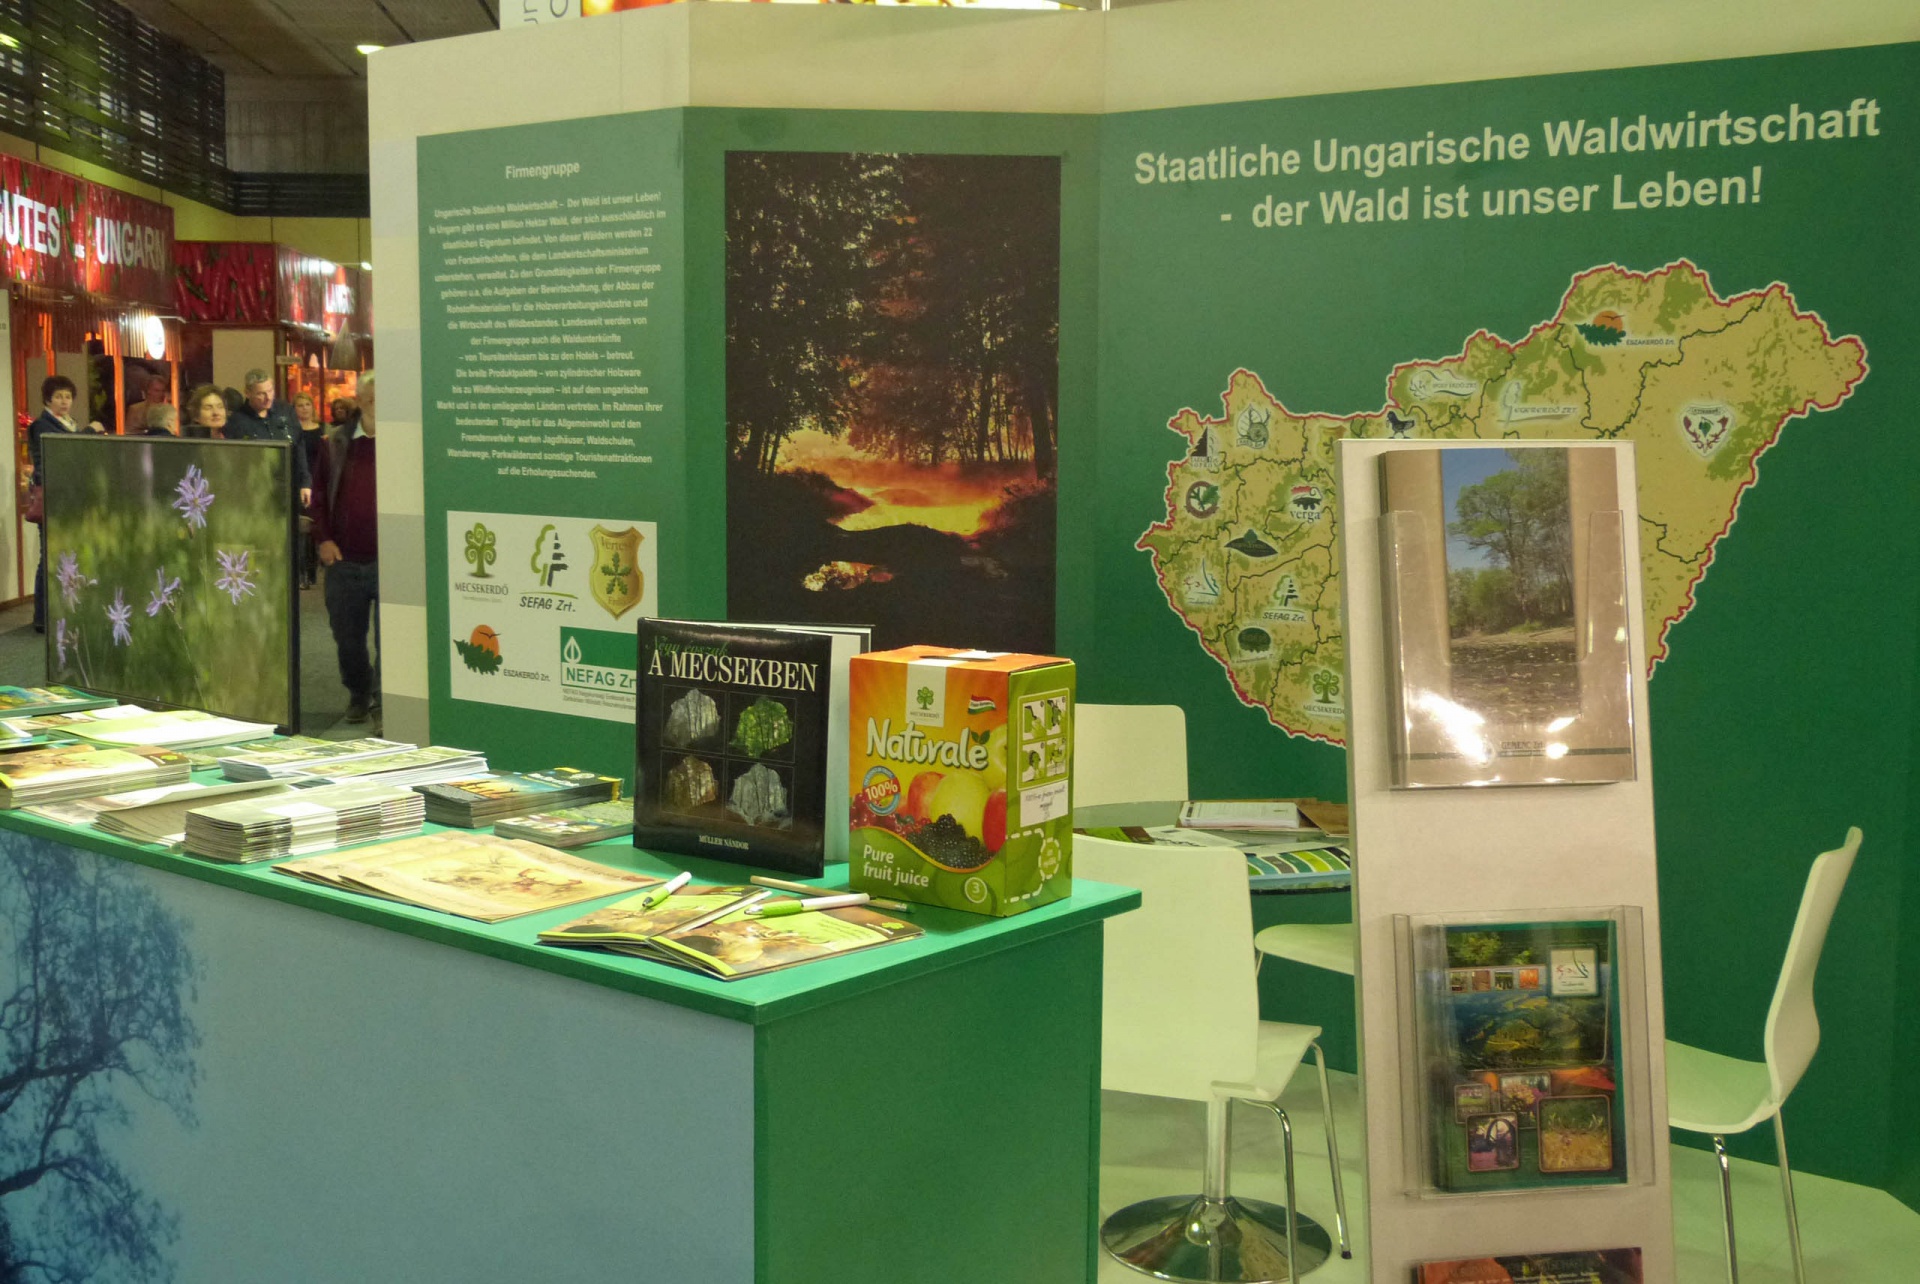 Állami erdőgazdaságok a Grüne Woche kiállításon